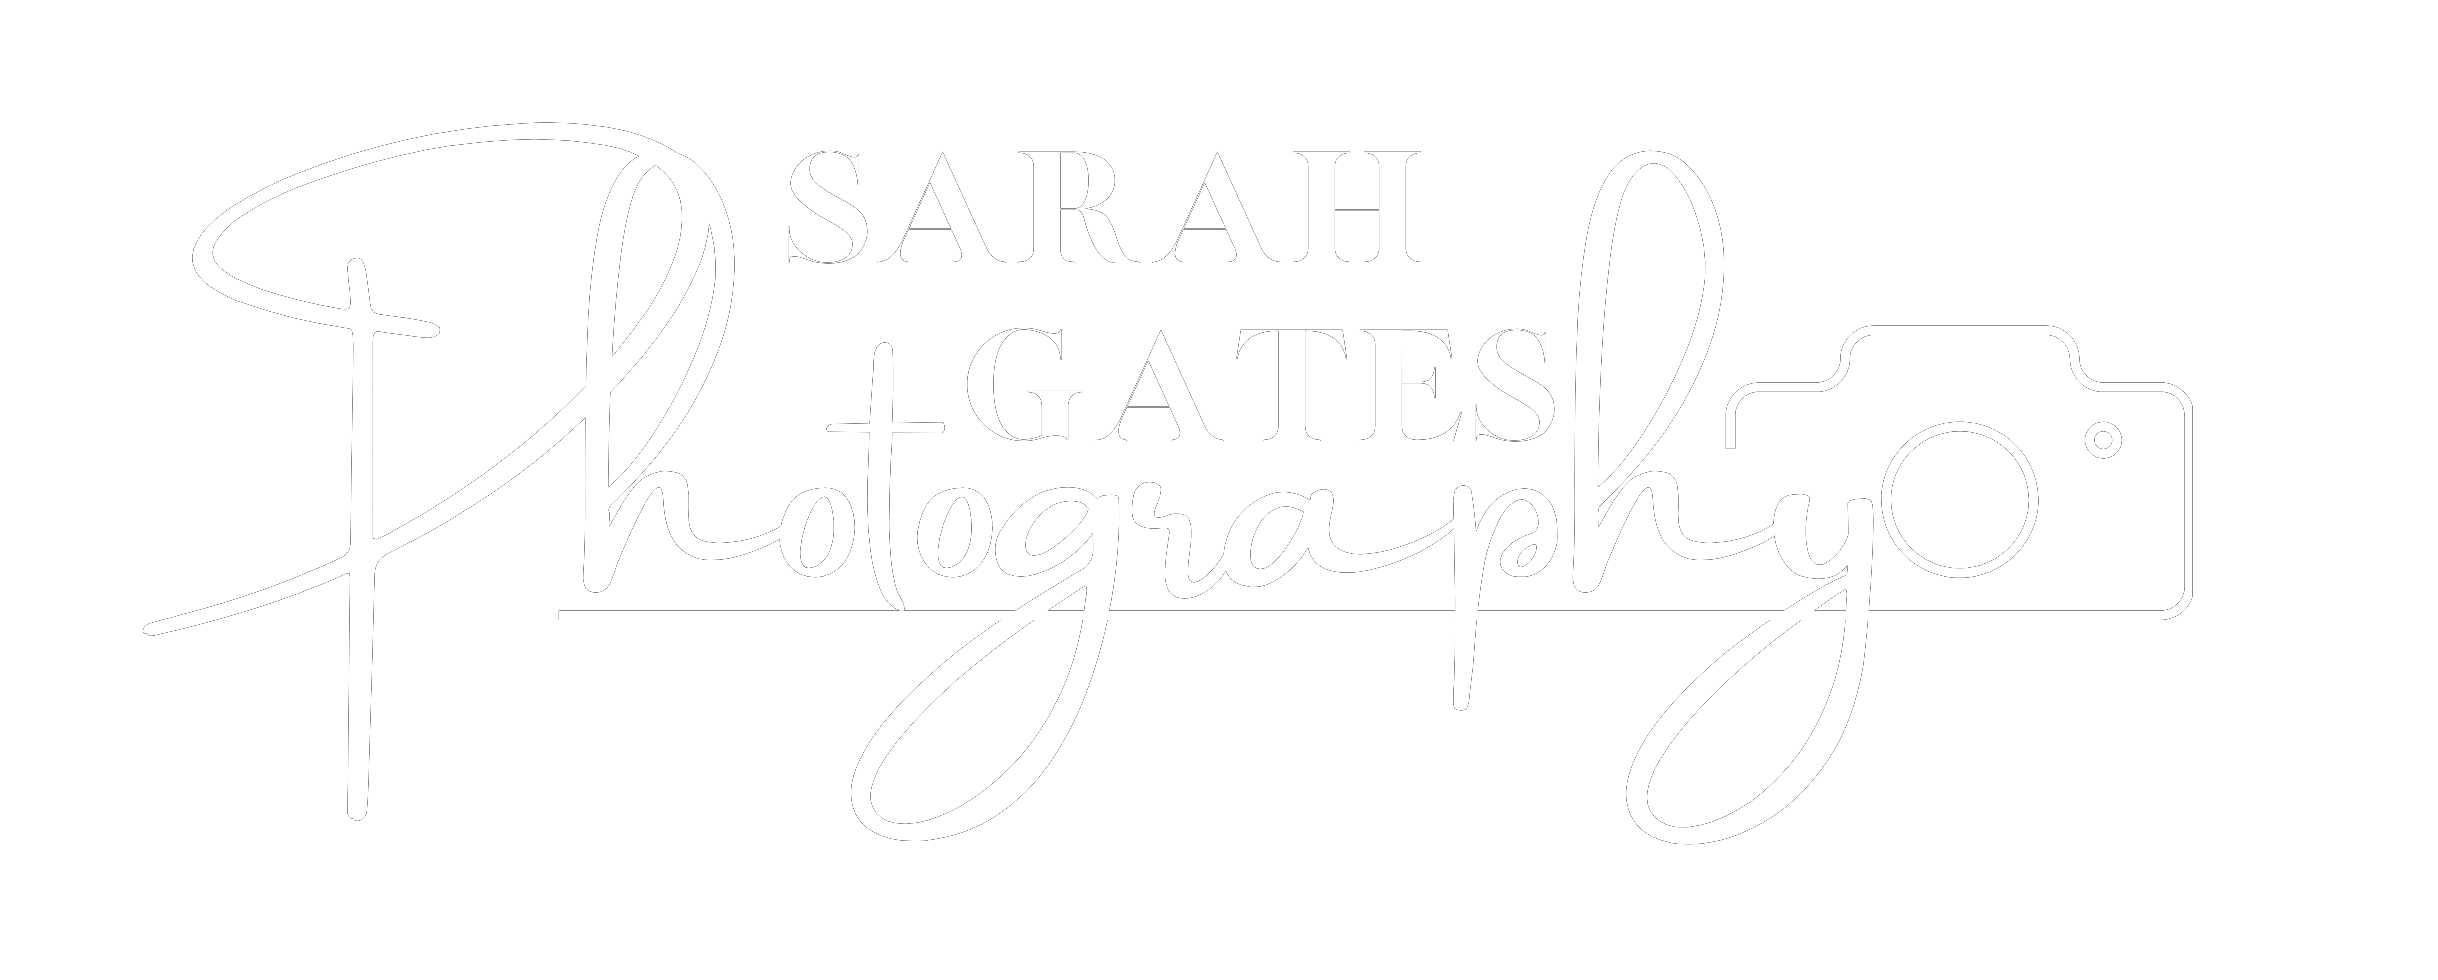 Sarah Gates Photography